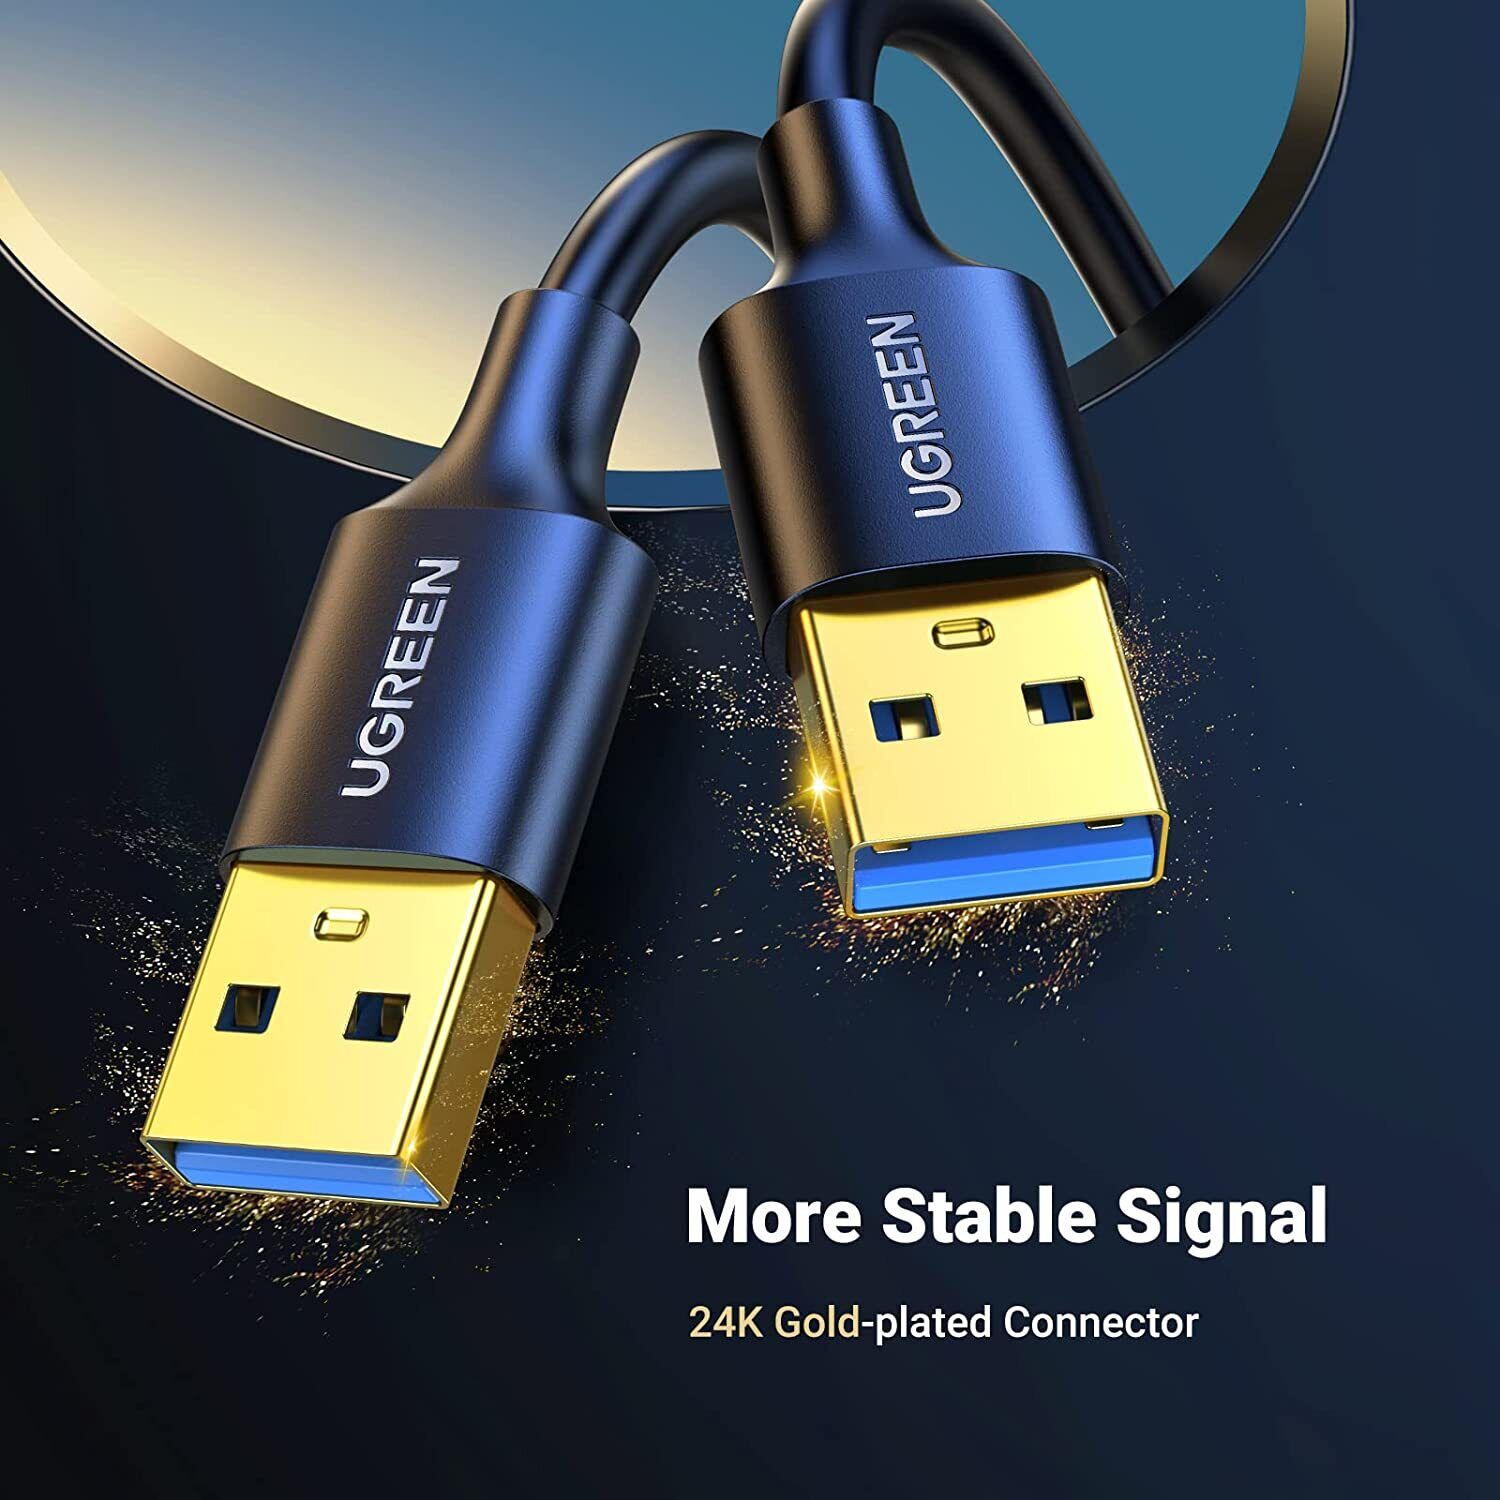 Dây - Cáp USB 3.0 nối hai đầu dương dương dài 1.5M chính hãng Ugreen 10310 cao cấp